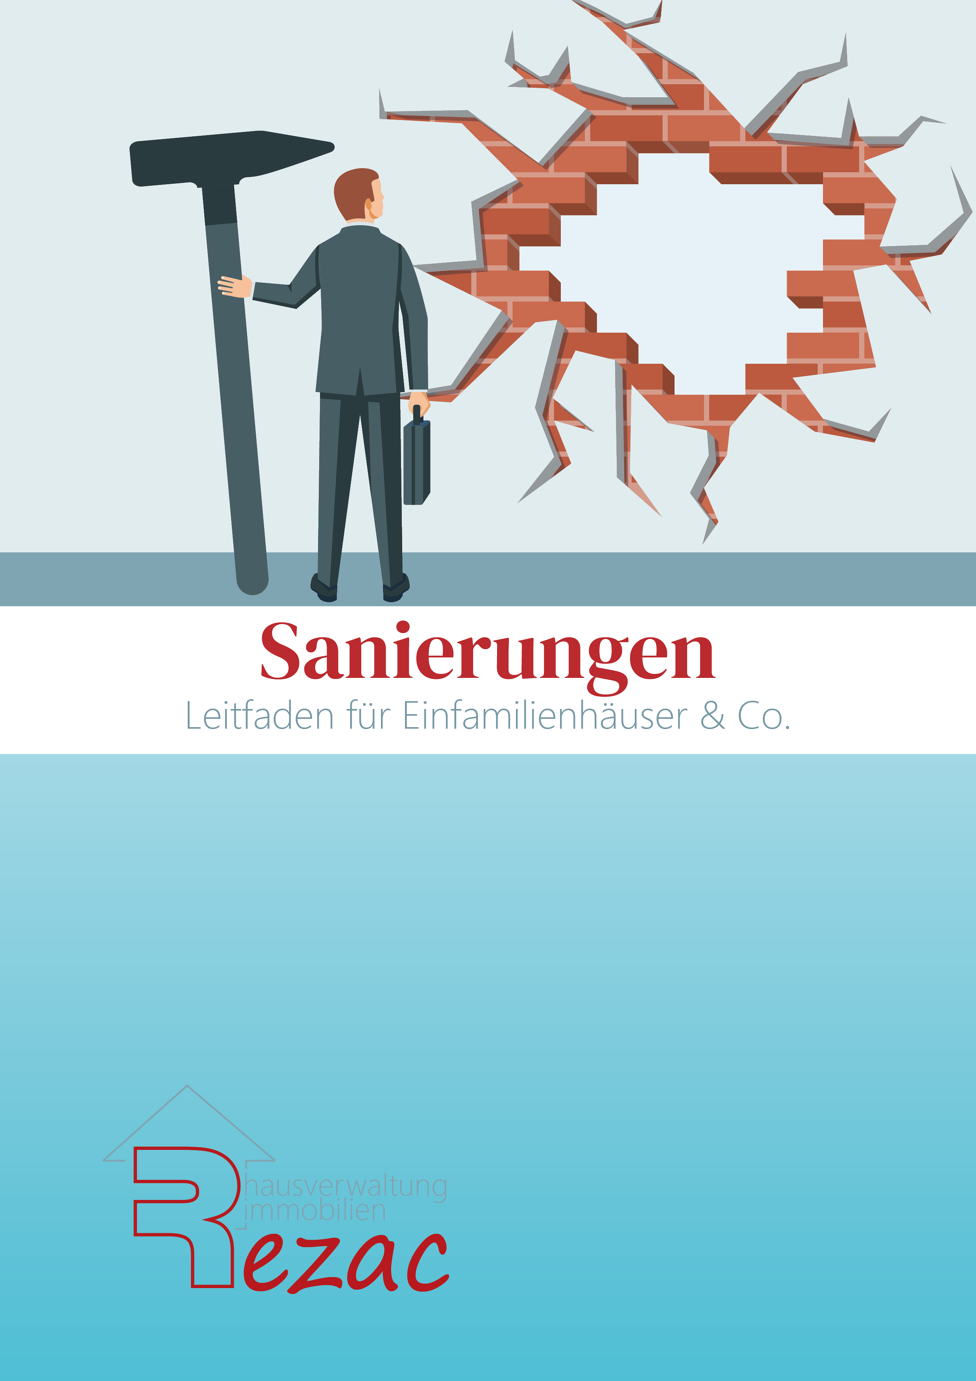 Coverbild des E-Books 'Sanierungen - Leitfaden für Einfamilienhäuser & Co.' von Rezac